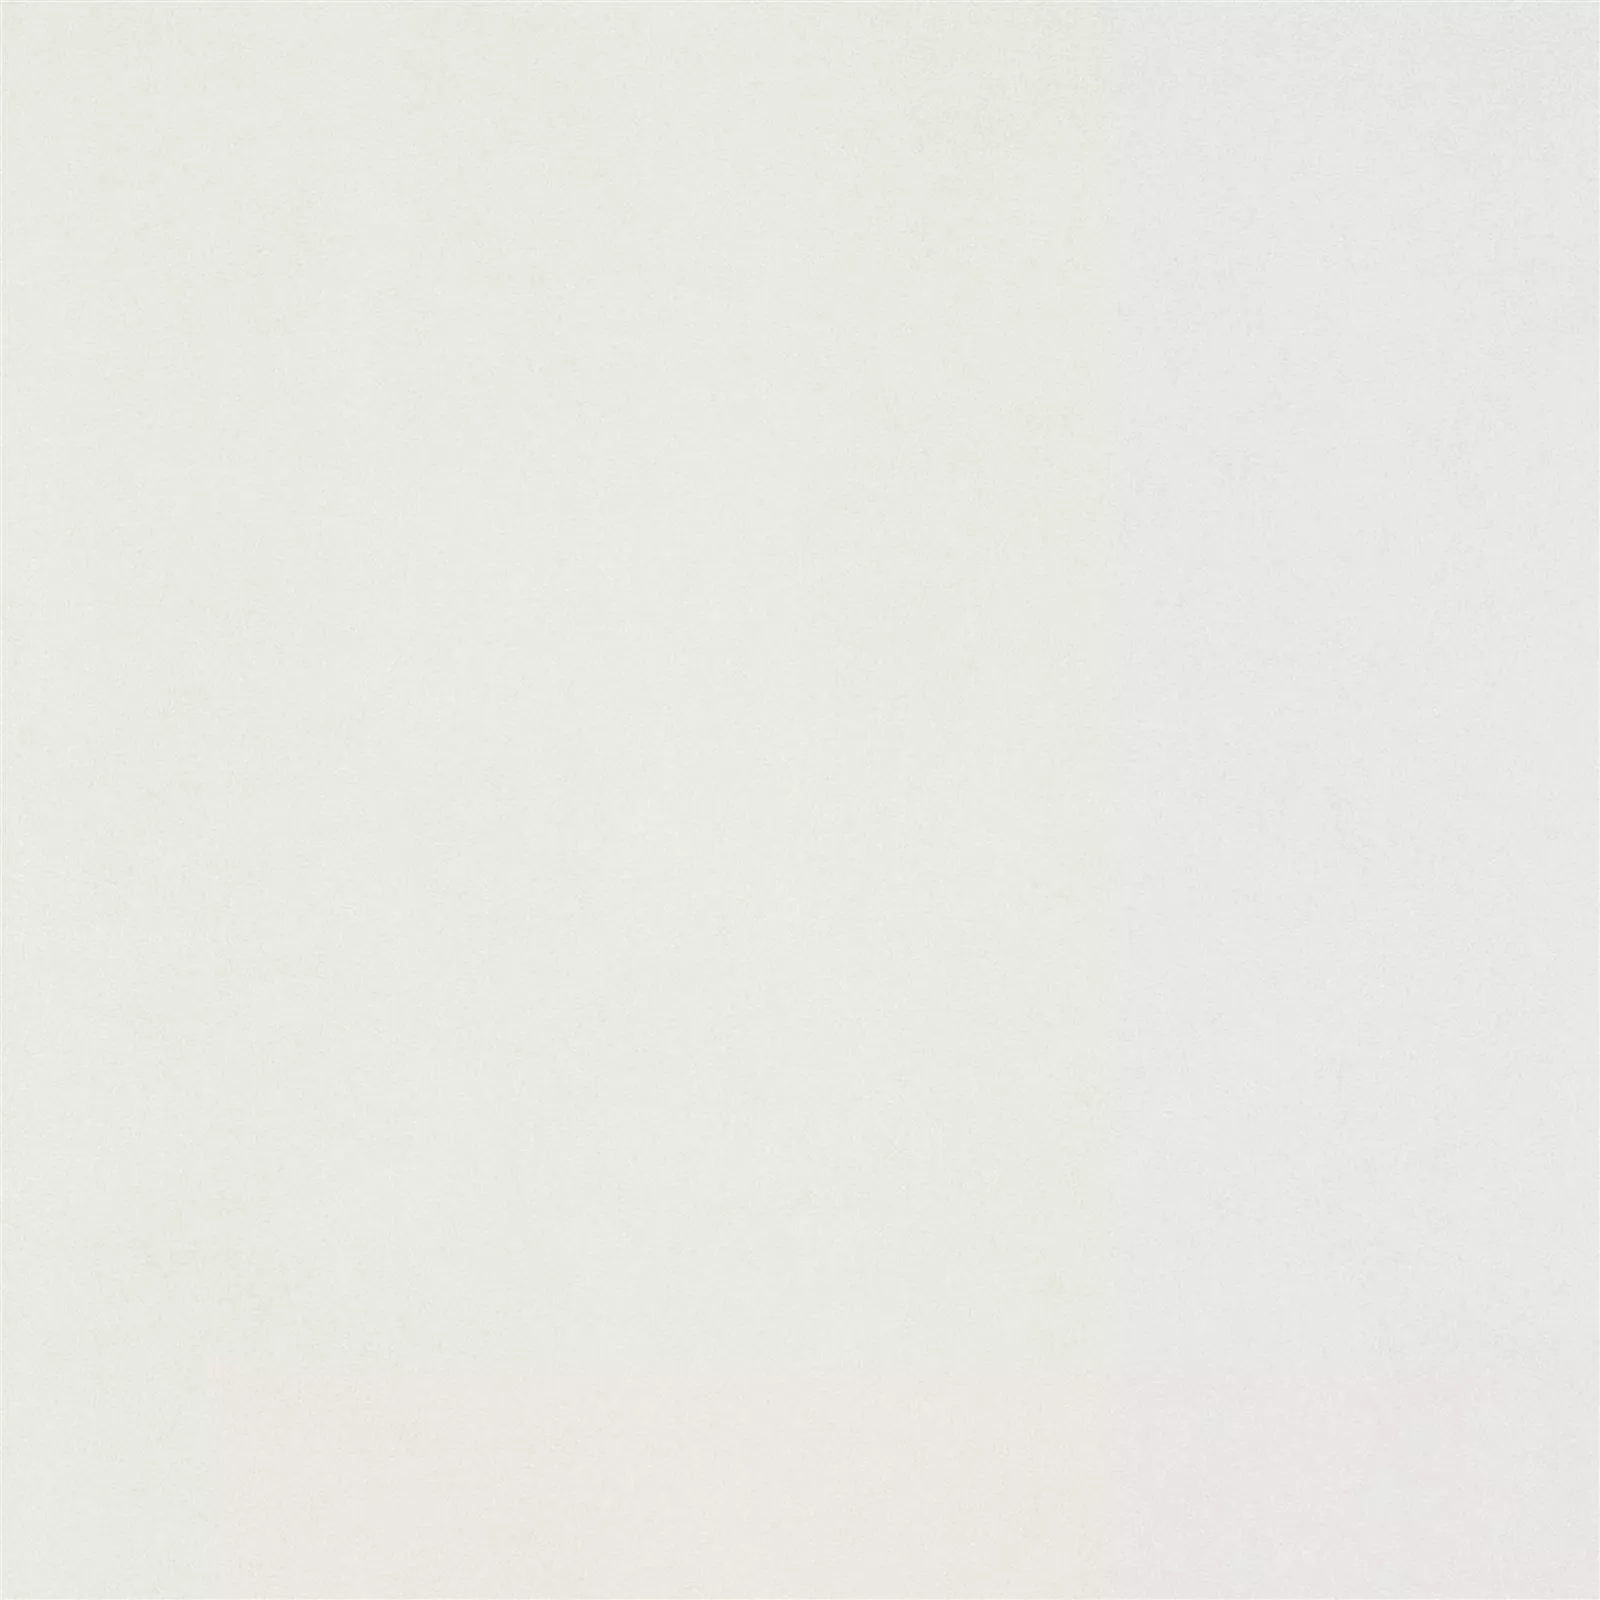 Πλακάκι Δαπέδου Mainland Συγκεκριμένη Εμφάνιση Αμεμπτος 60x60cm Ασπρο